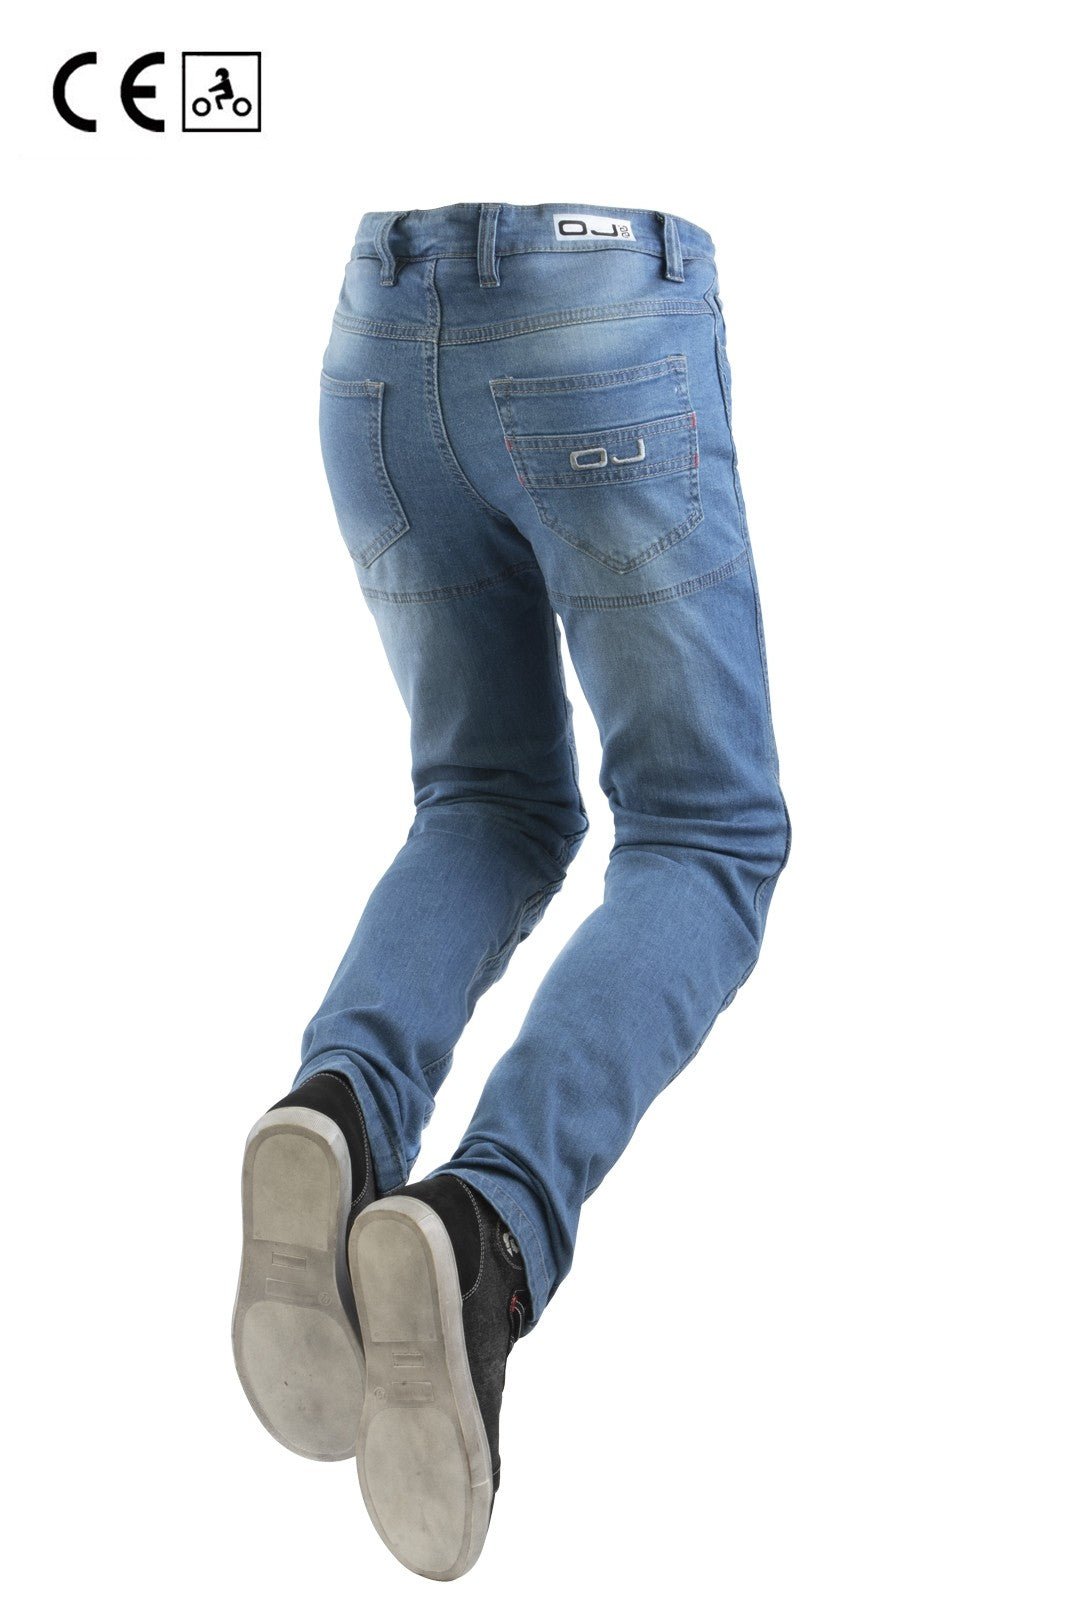 Jeans moto OJ STORM donna elasticizzato, impermeabile, aramidica e protezioni - OnTheRoad.shop - OJ